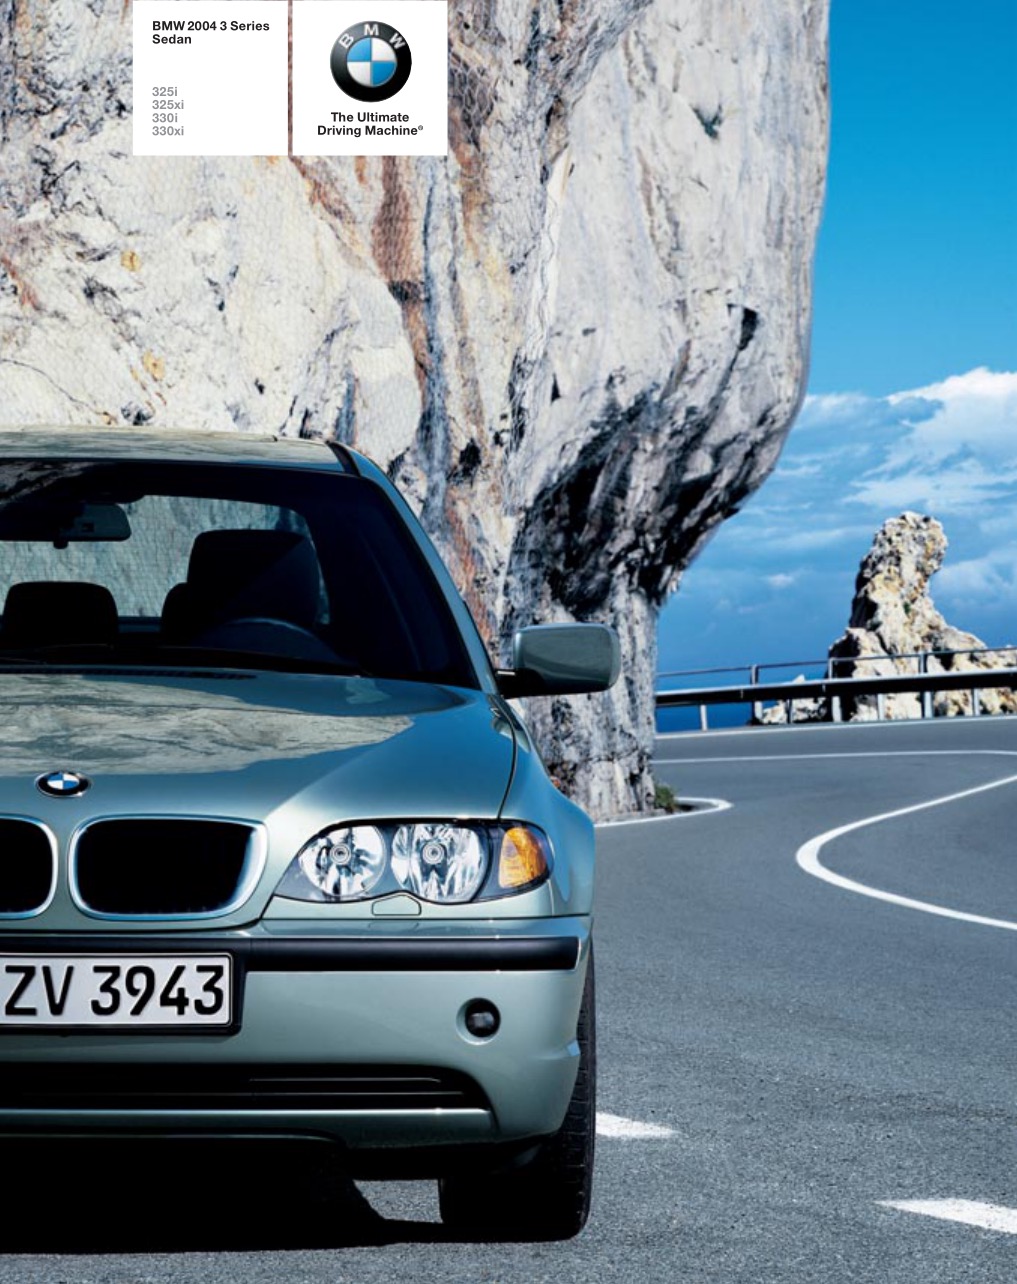 2004 BMW 3-Series Sedan Brochure